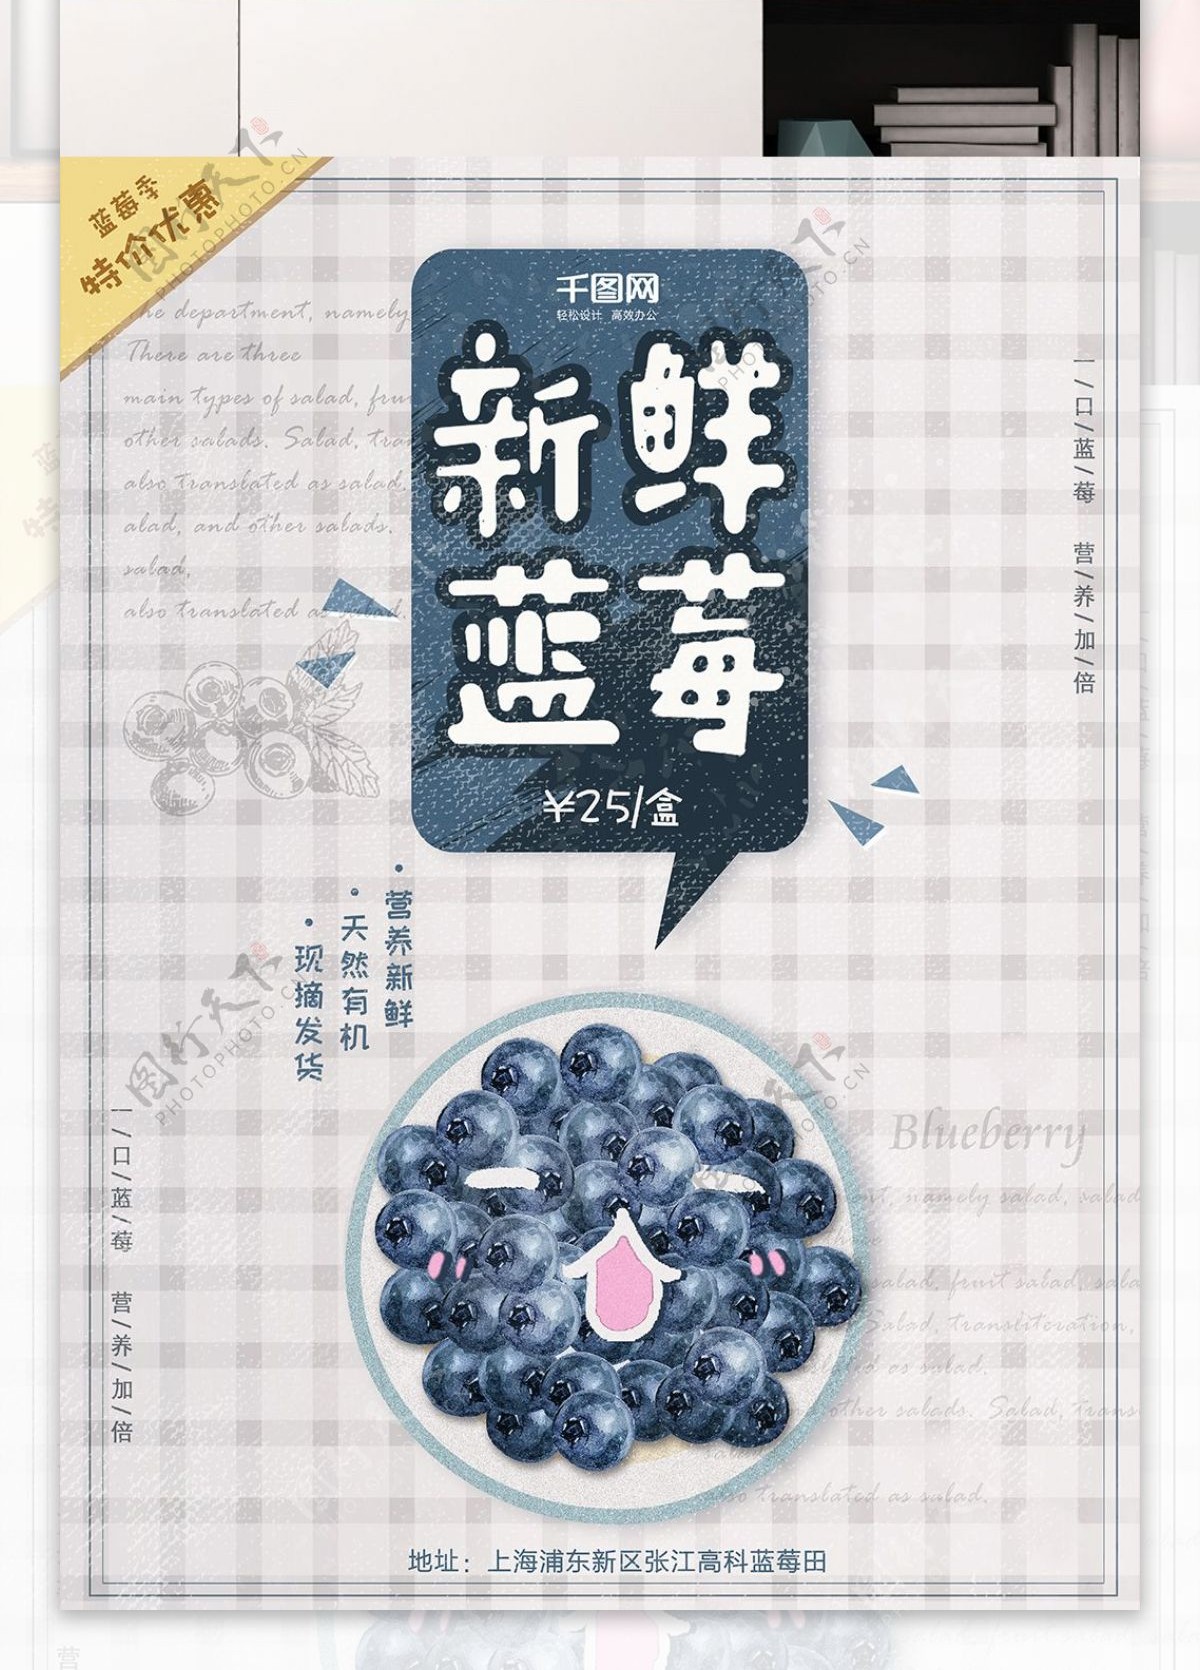 蓝莓海报水果促销淡雅简约蓝色文艺设计